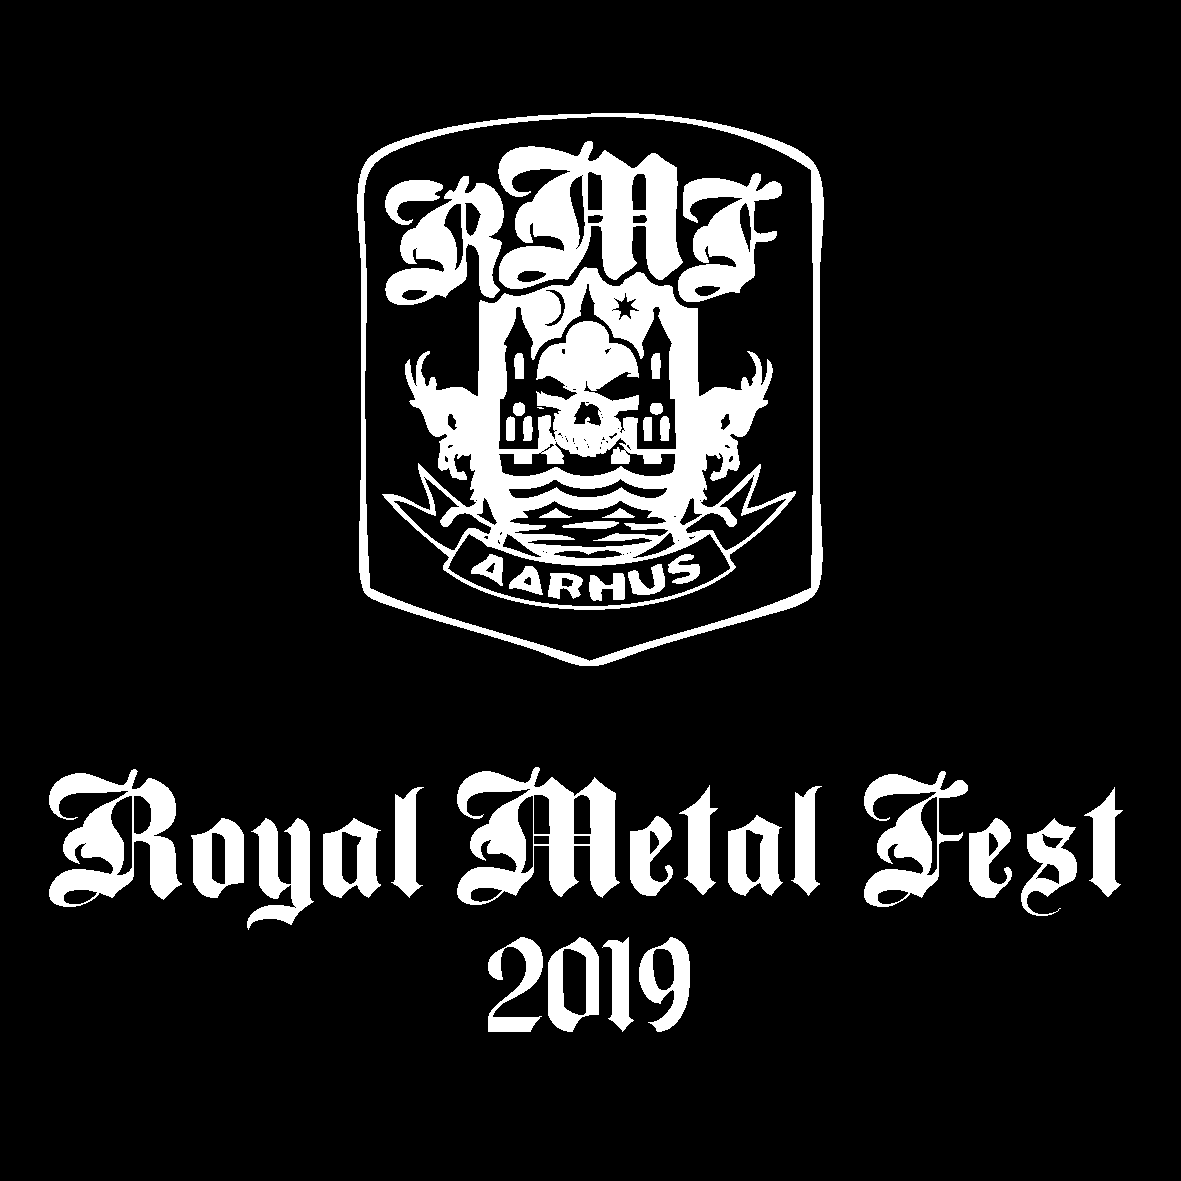 Ethereal Kingdoms Royal Metal Fest 2019